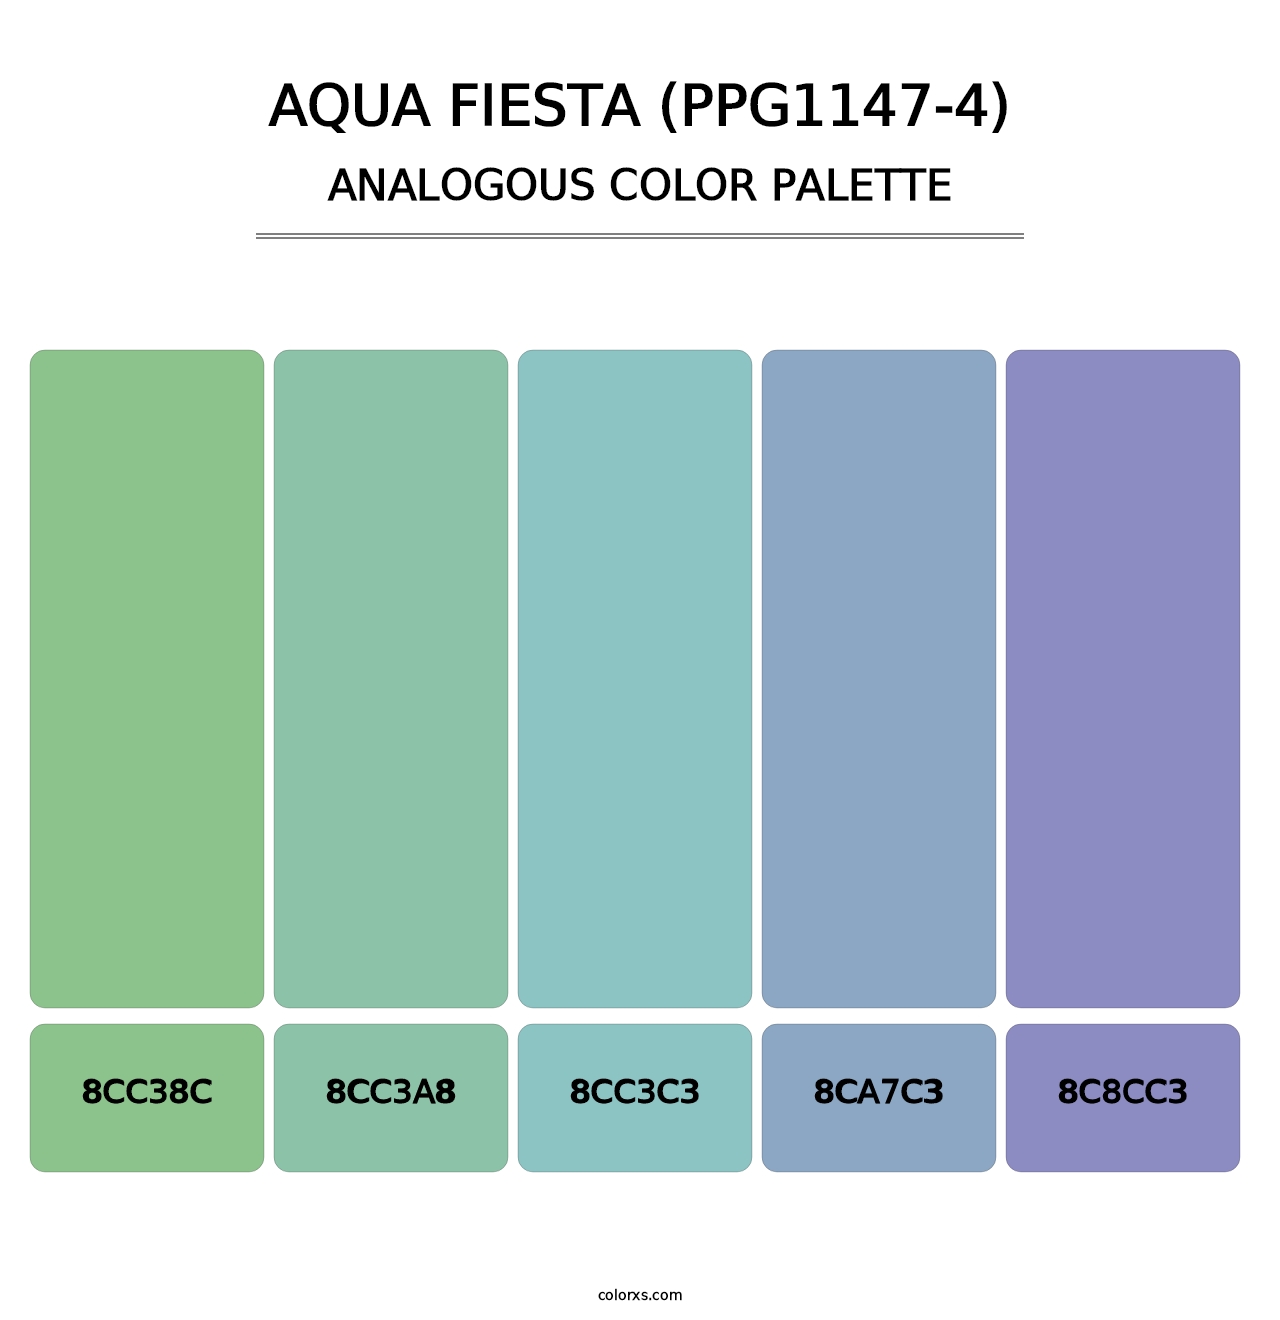 Aqua Fiesta (PPG1147-4) - Analogous Color Palette